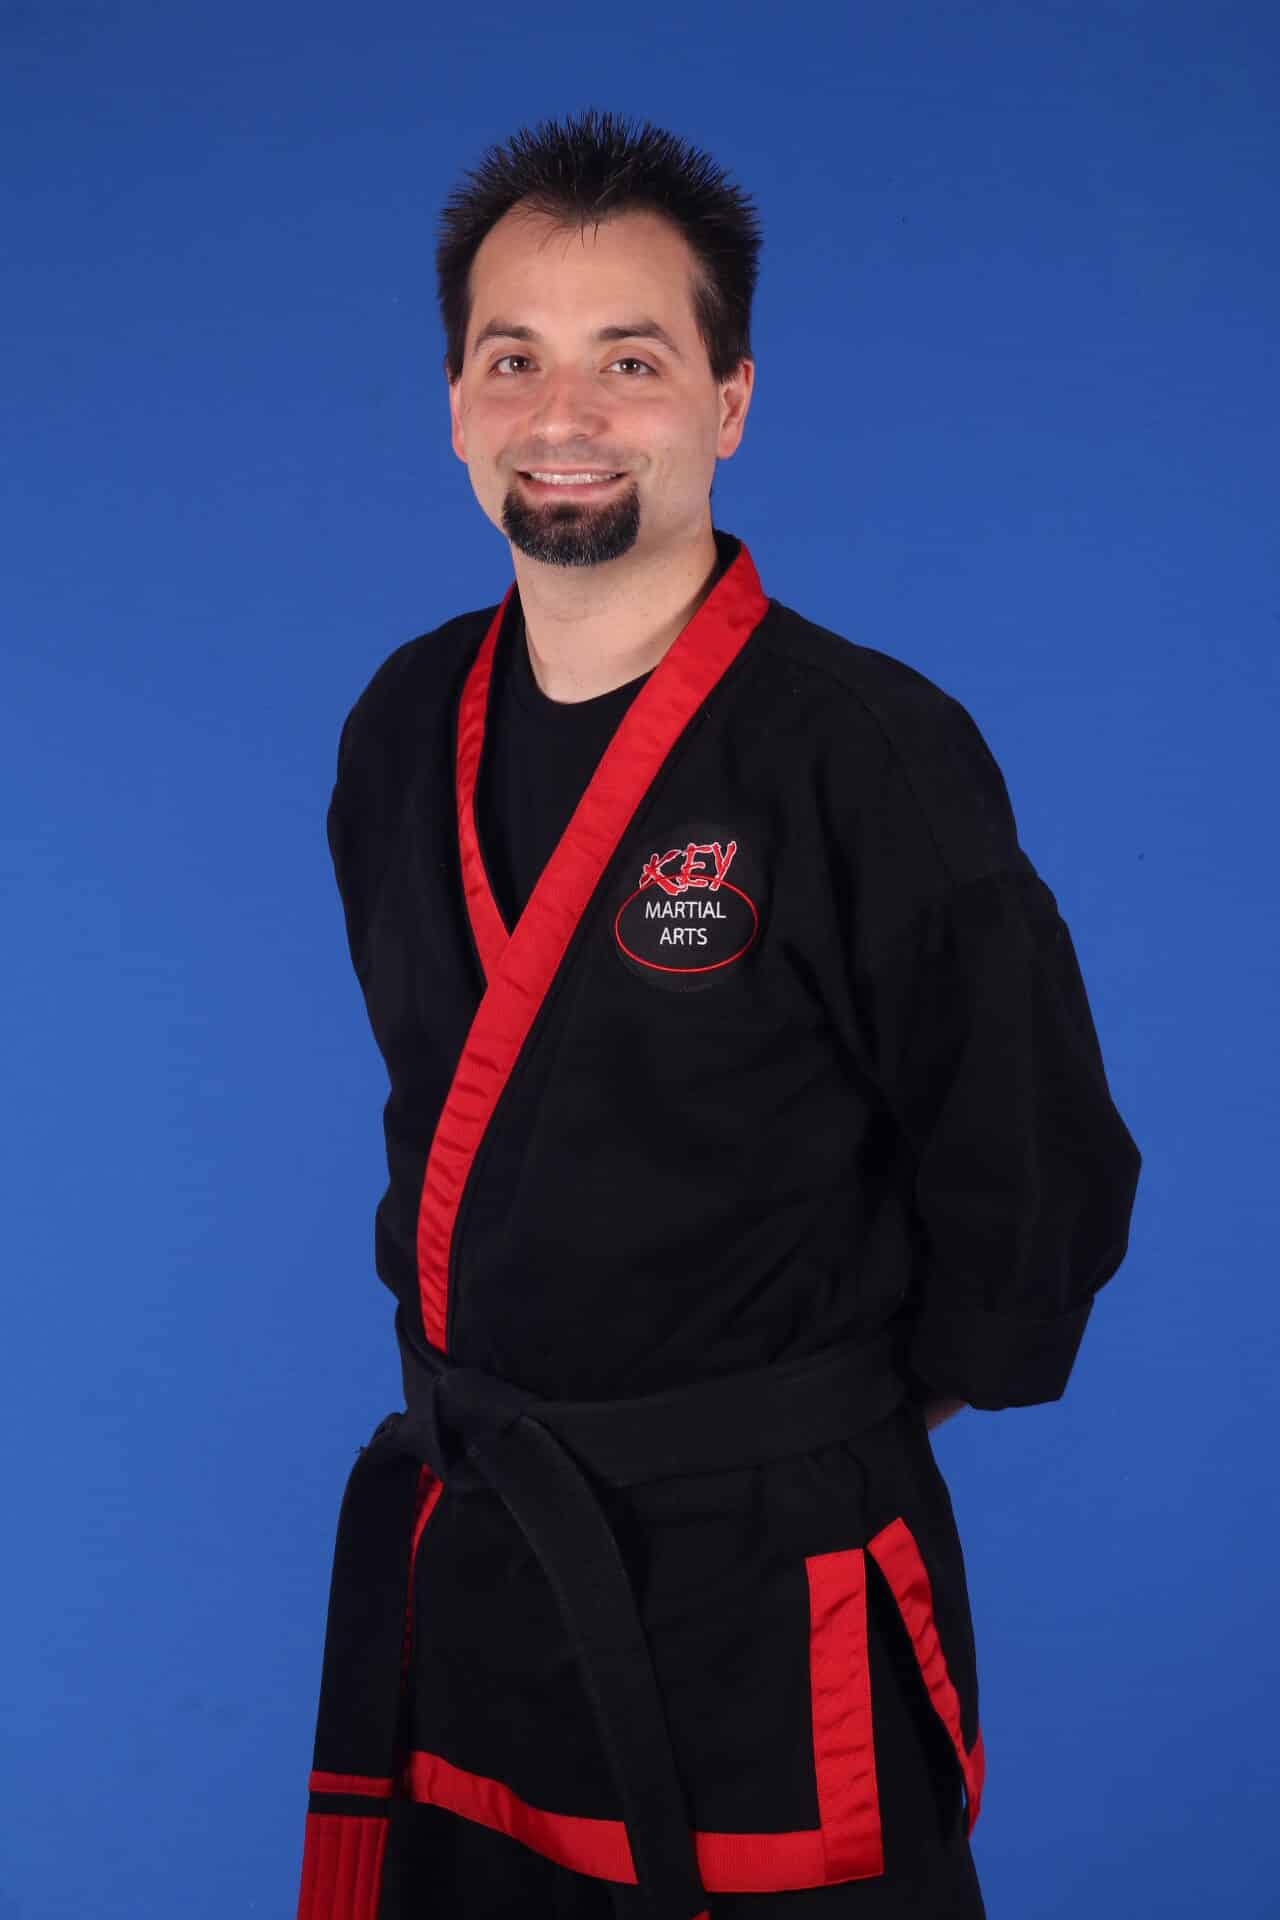 Key Martial Arts Matt Polack